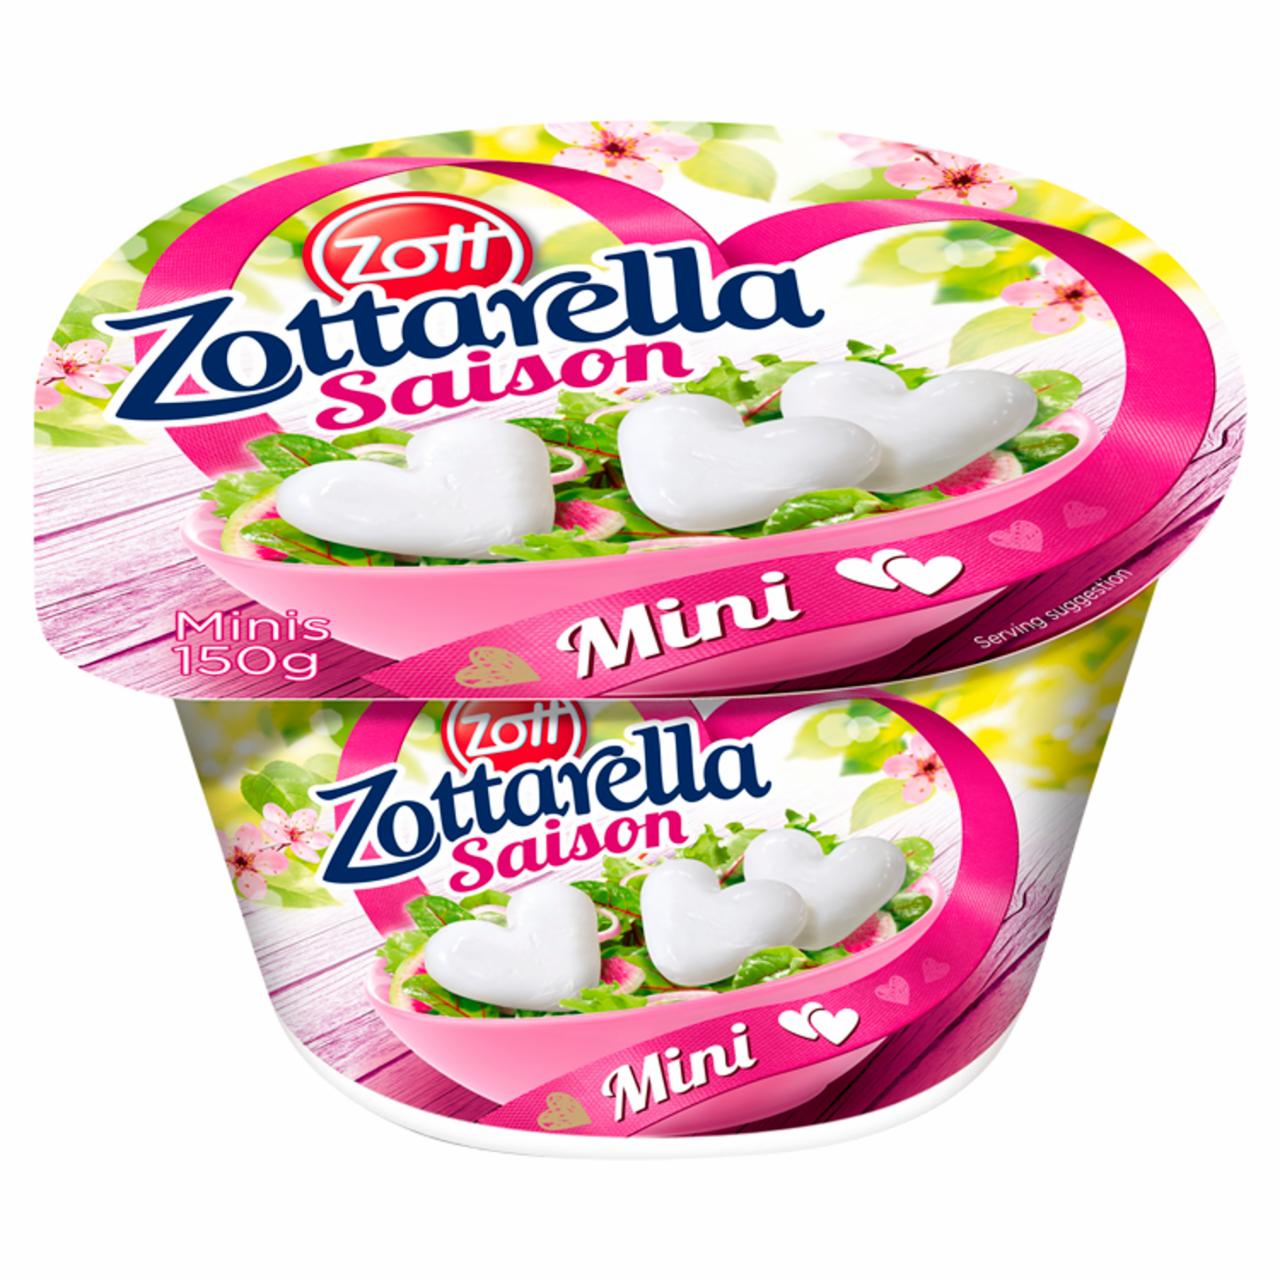 Képek - Zott Zottarella Saison Mini zsíros, lágy mozzarella sajt sós lében 150 g